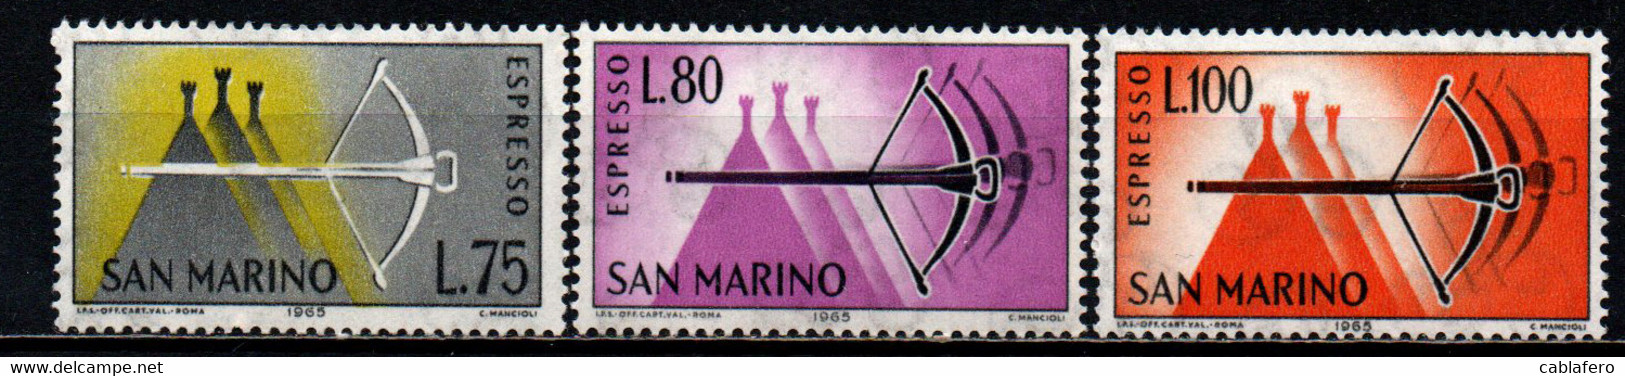 SAN MARINO - 1966 - BALESTRA - NUOVI VALORI - MNH - Eilpost